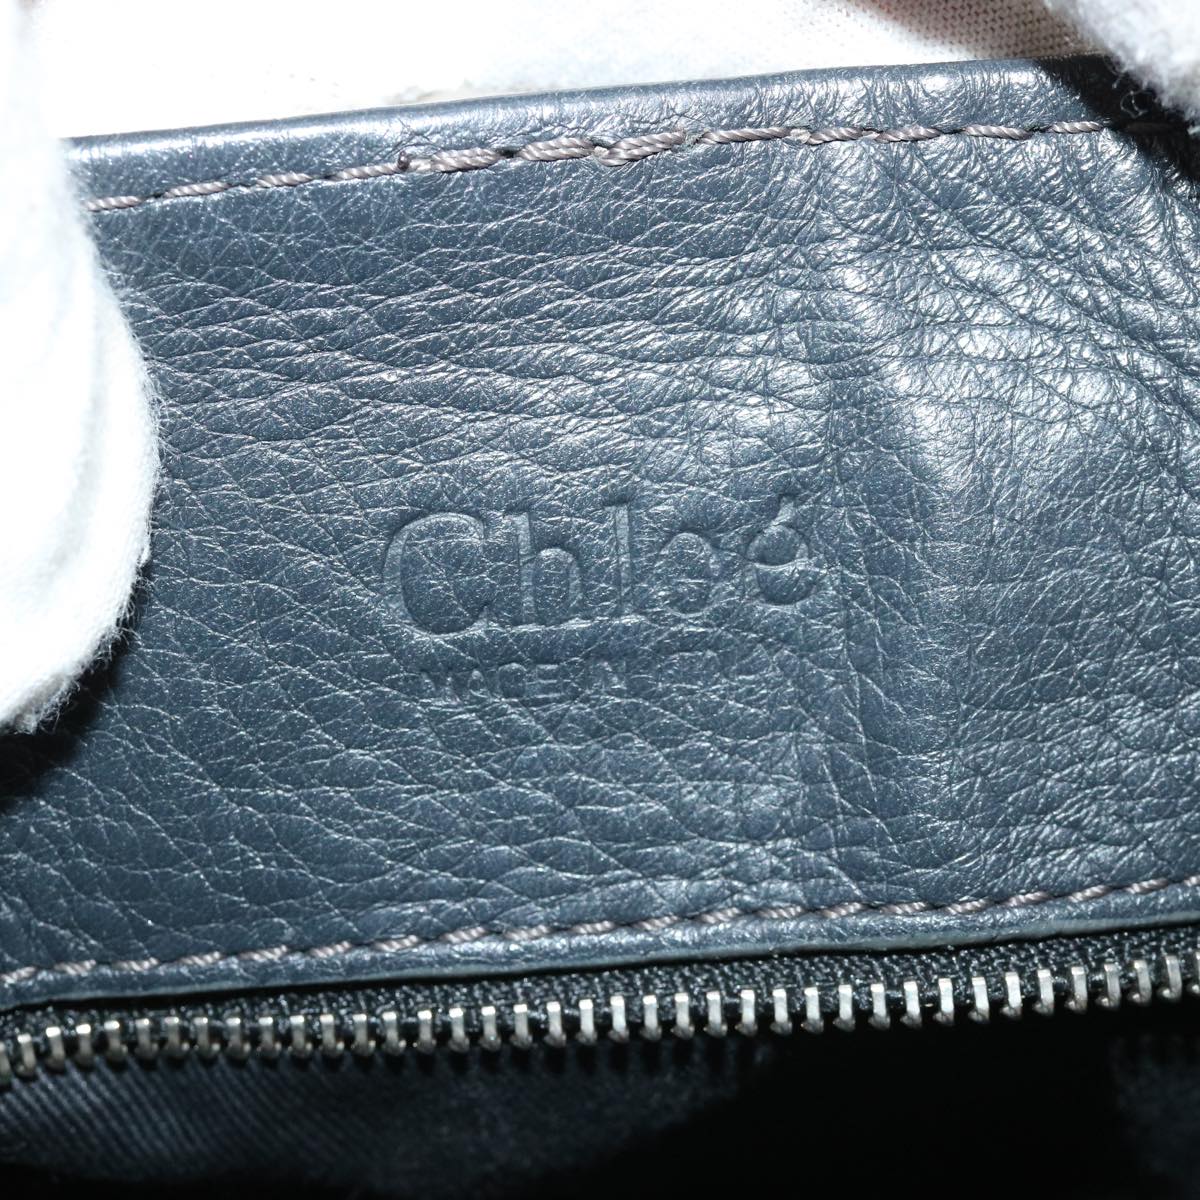 Chloe Paddington Hand Bag Leather Navy 01-06-53 Auth 36559